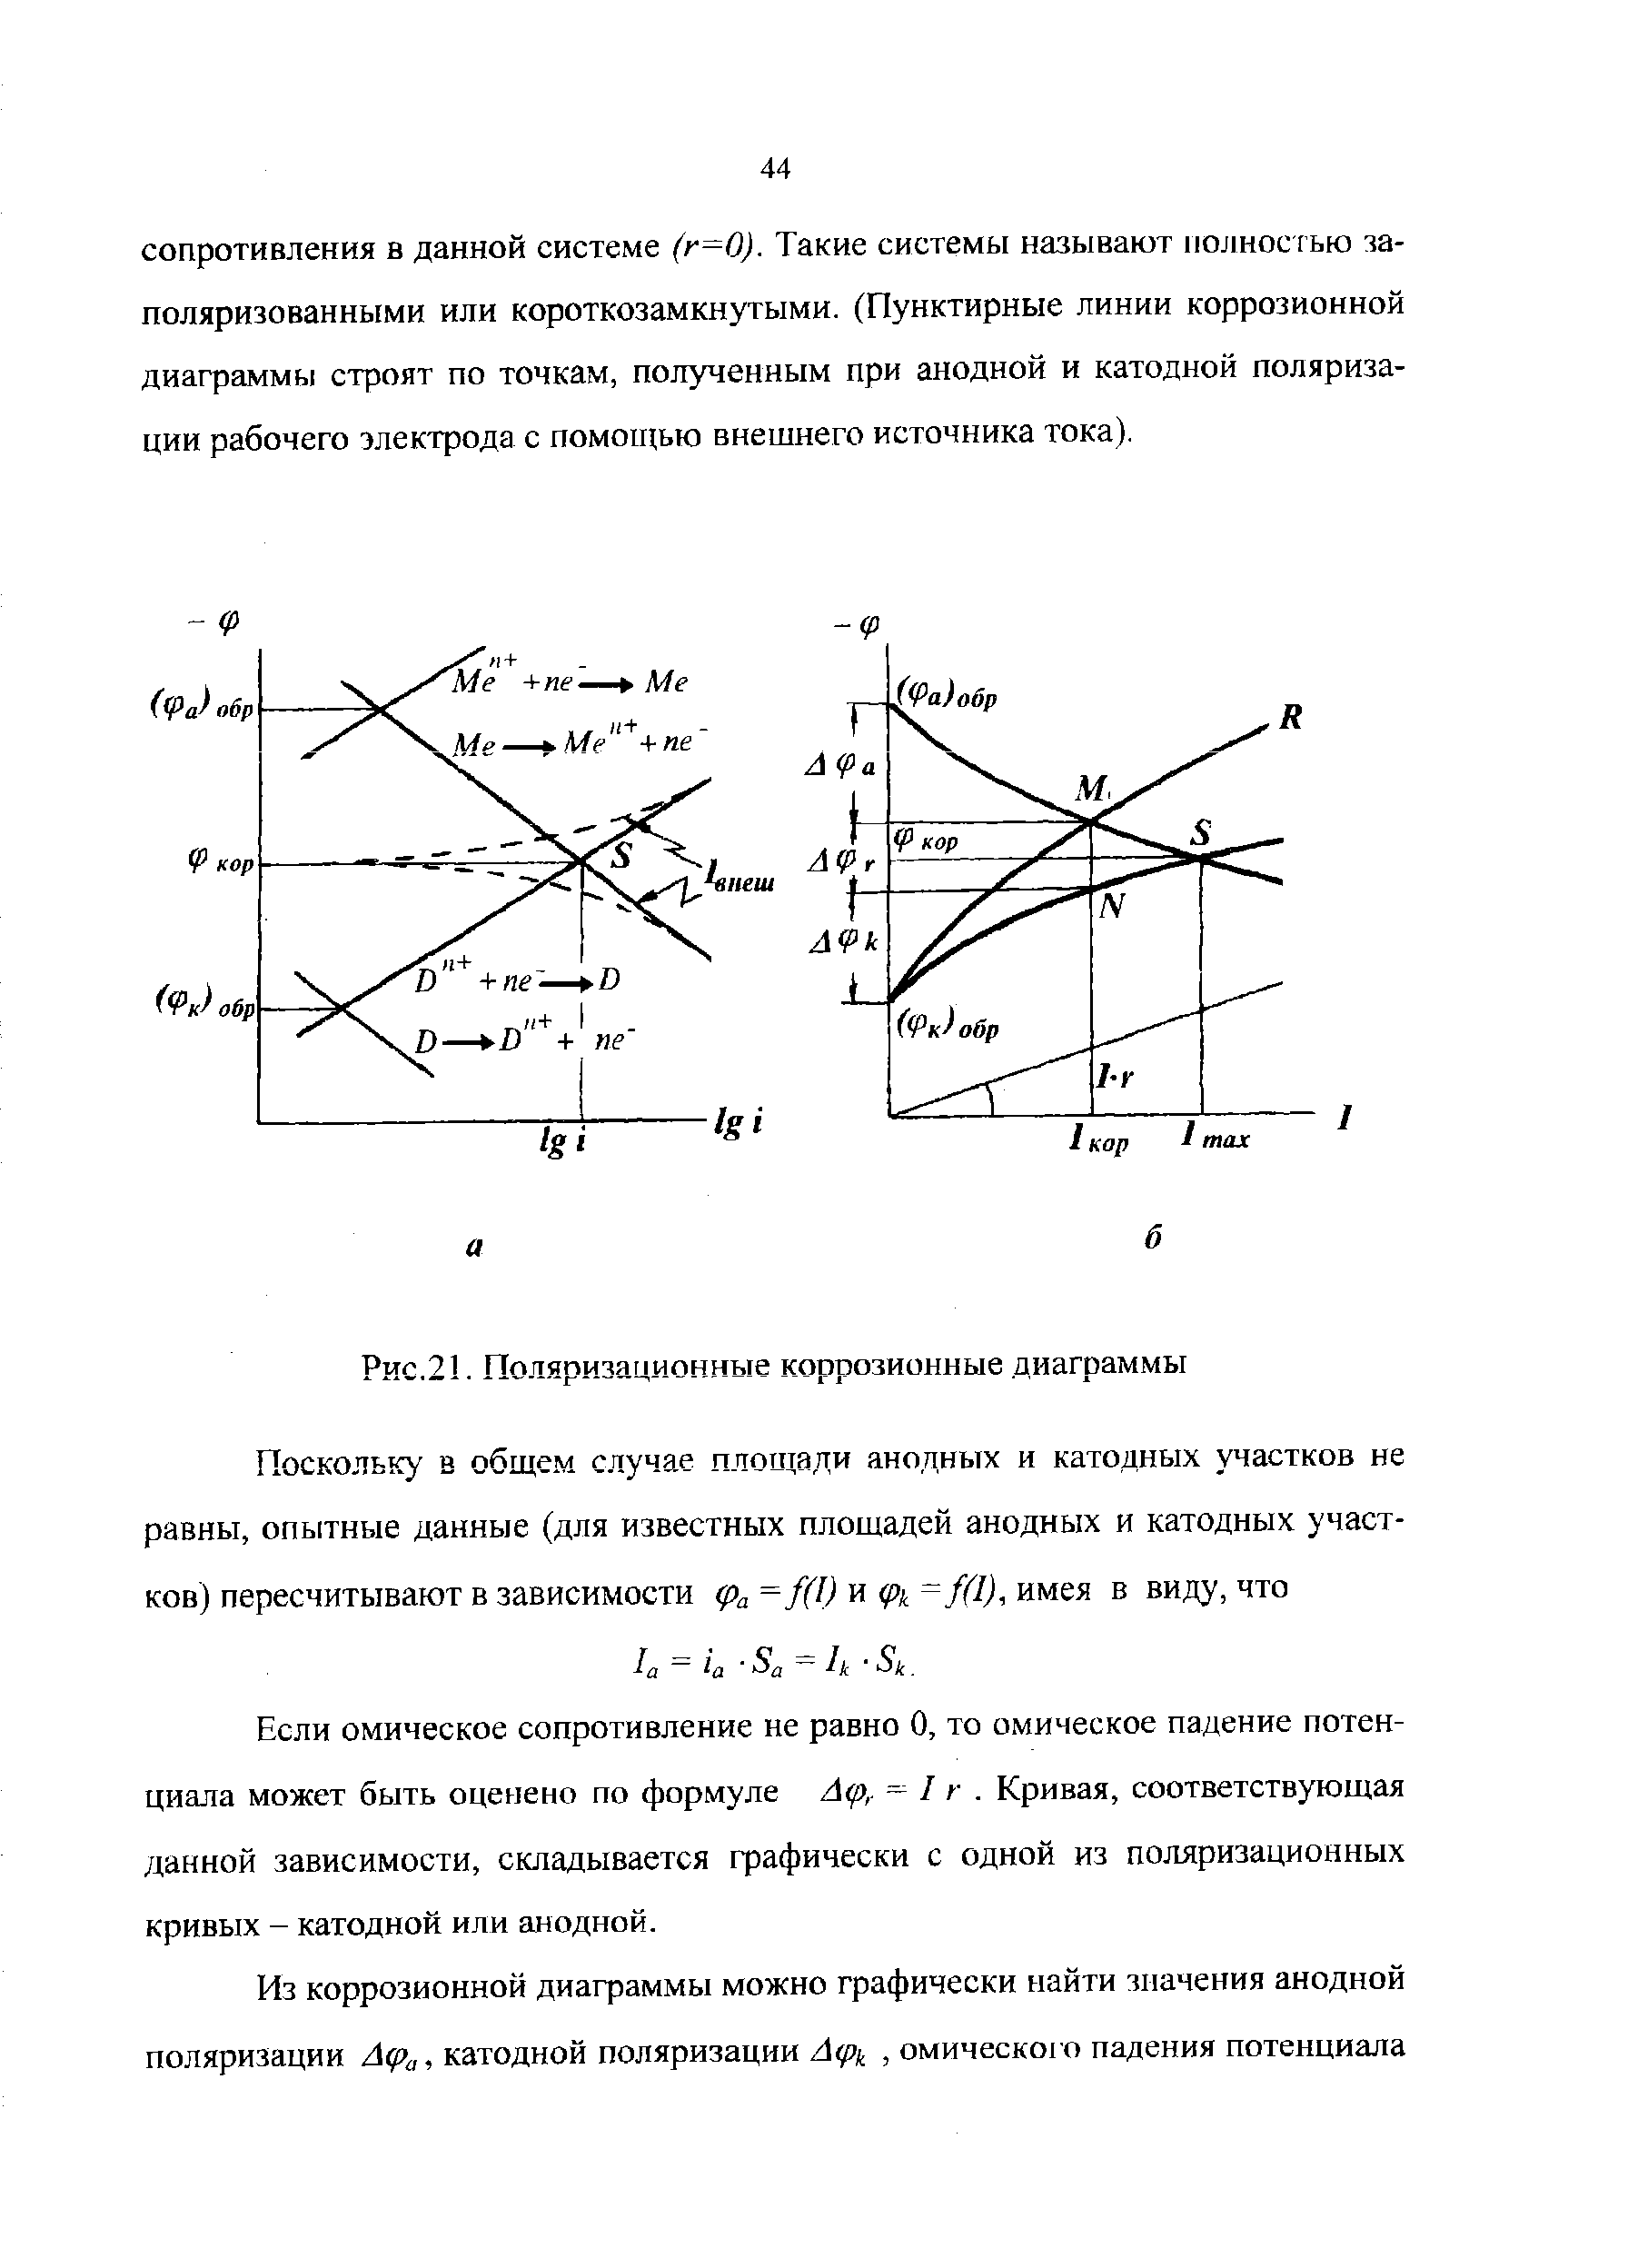 Если омическое сопротивление не равно О, то омическое падение потенциала может быть оценено по формуле Л р,- I г. Кривая, соответствующая данной зависимости, складывается графически с одной из поляризационных кривых - катодной или анодной.